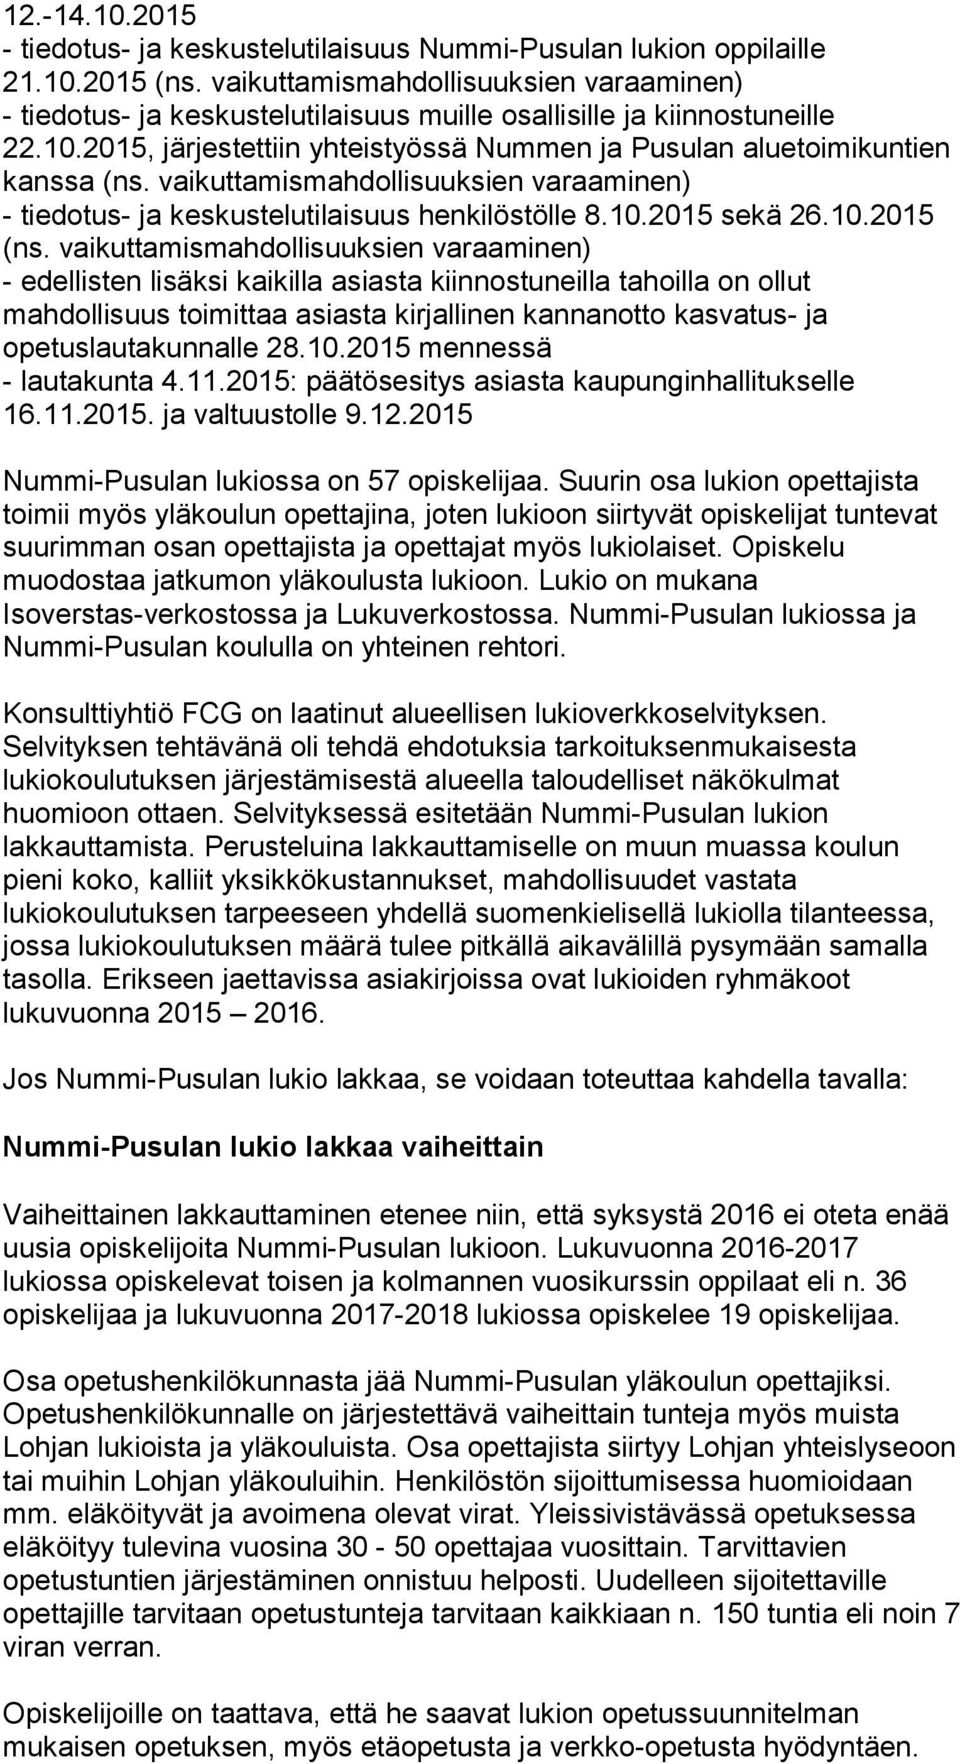 vaikuttamismahdollisuuksien varaaminen) - tiedotus- ja keskustelutilaisuus henkilöstölle 8.10.2015 sekä 26.10.2015 (ns.